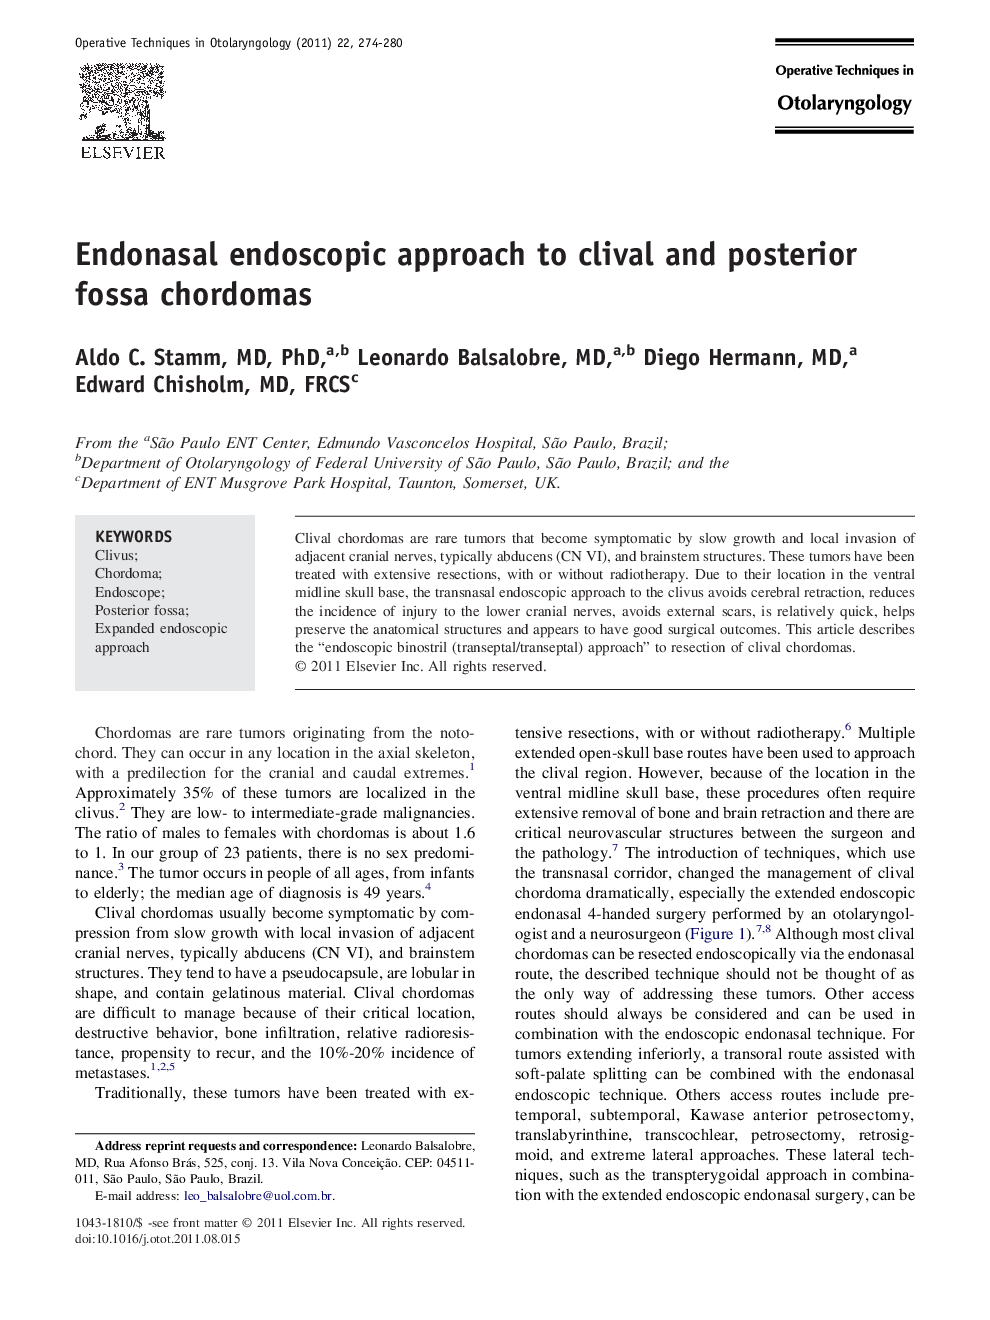 Endonasal endoscopic approach to clival and posterior fossa chordomas